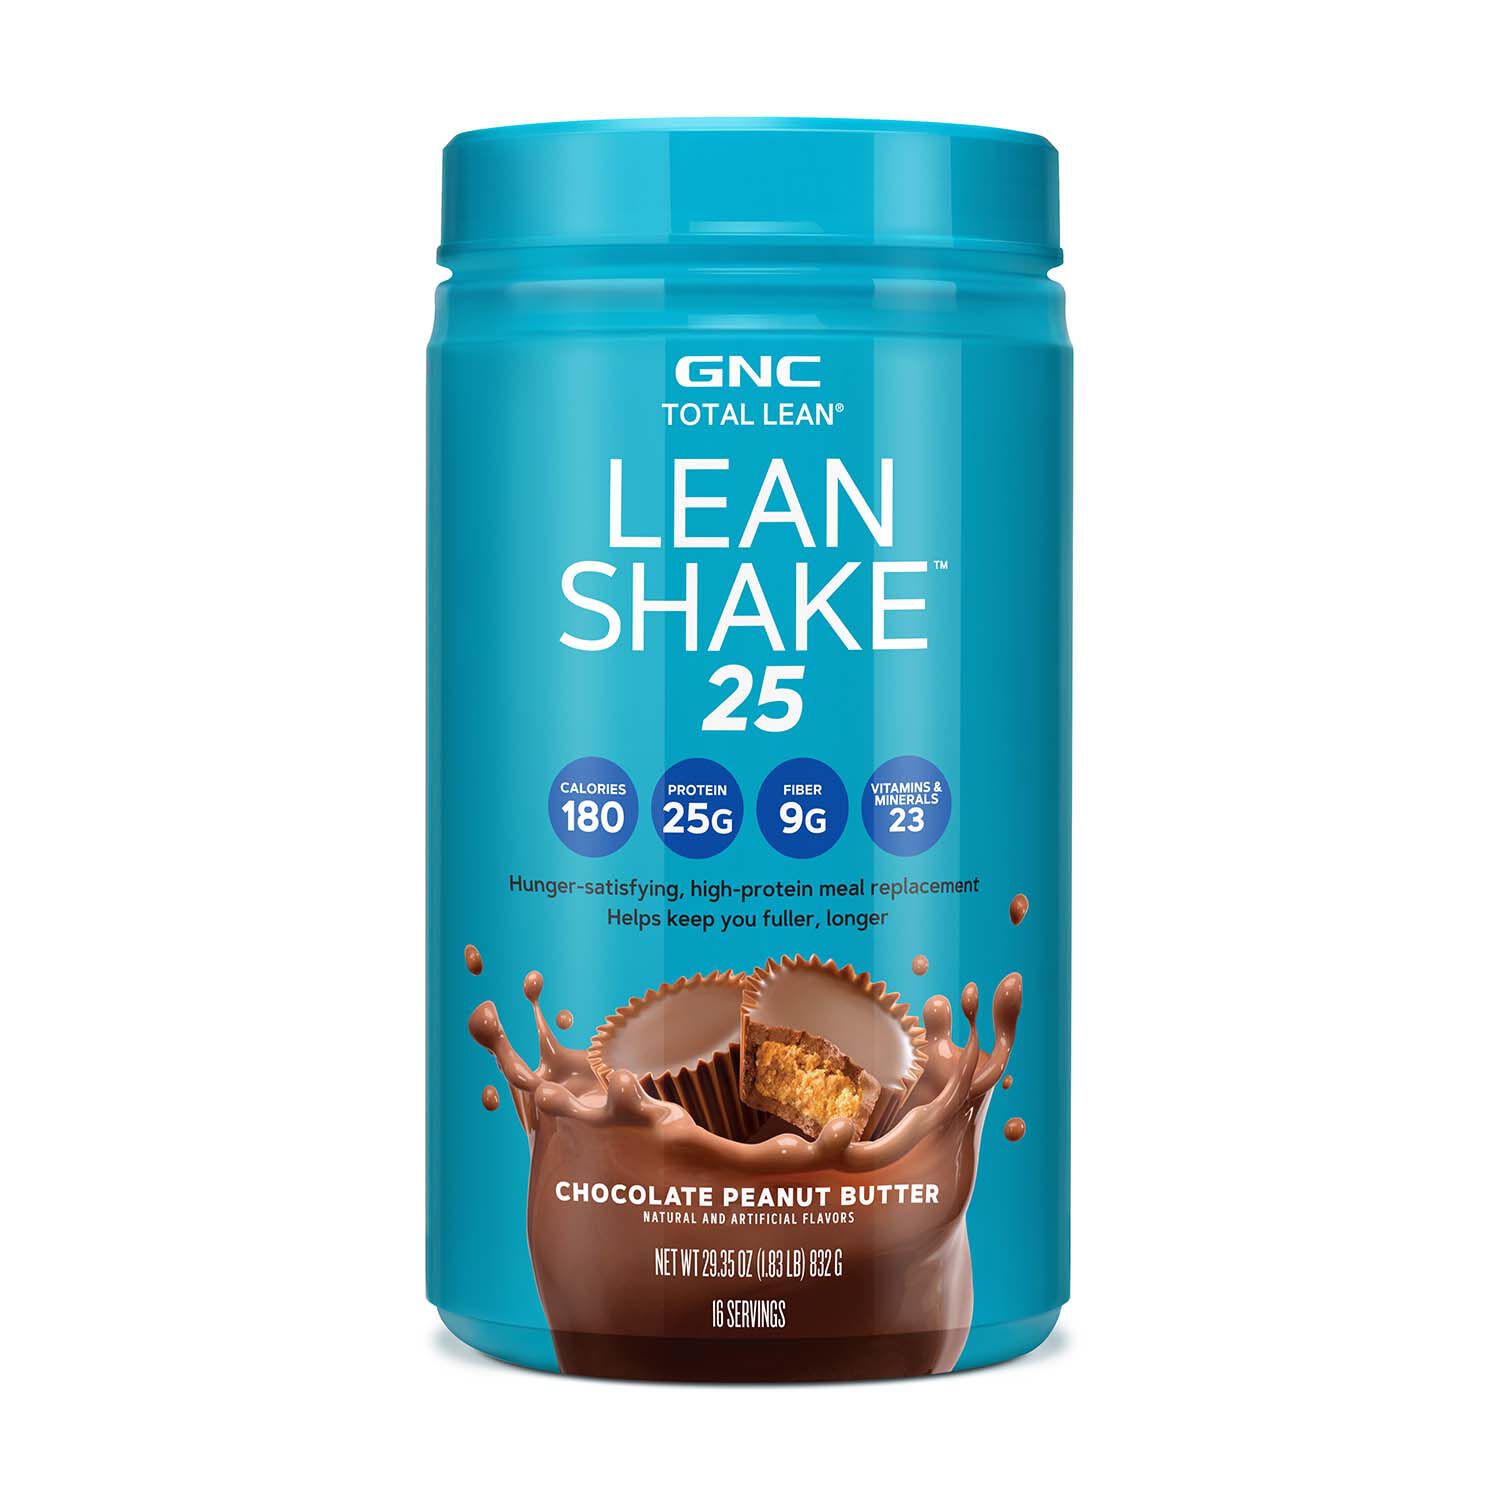 GNC Total Lean Lean Shake 25 Chocolate Peanut Butter